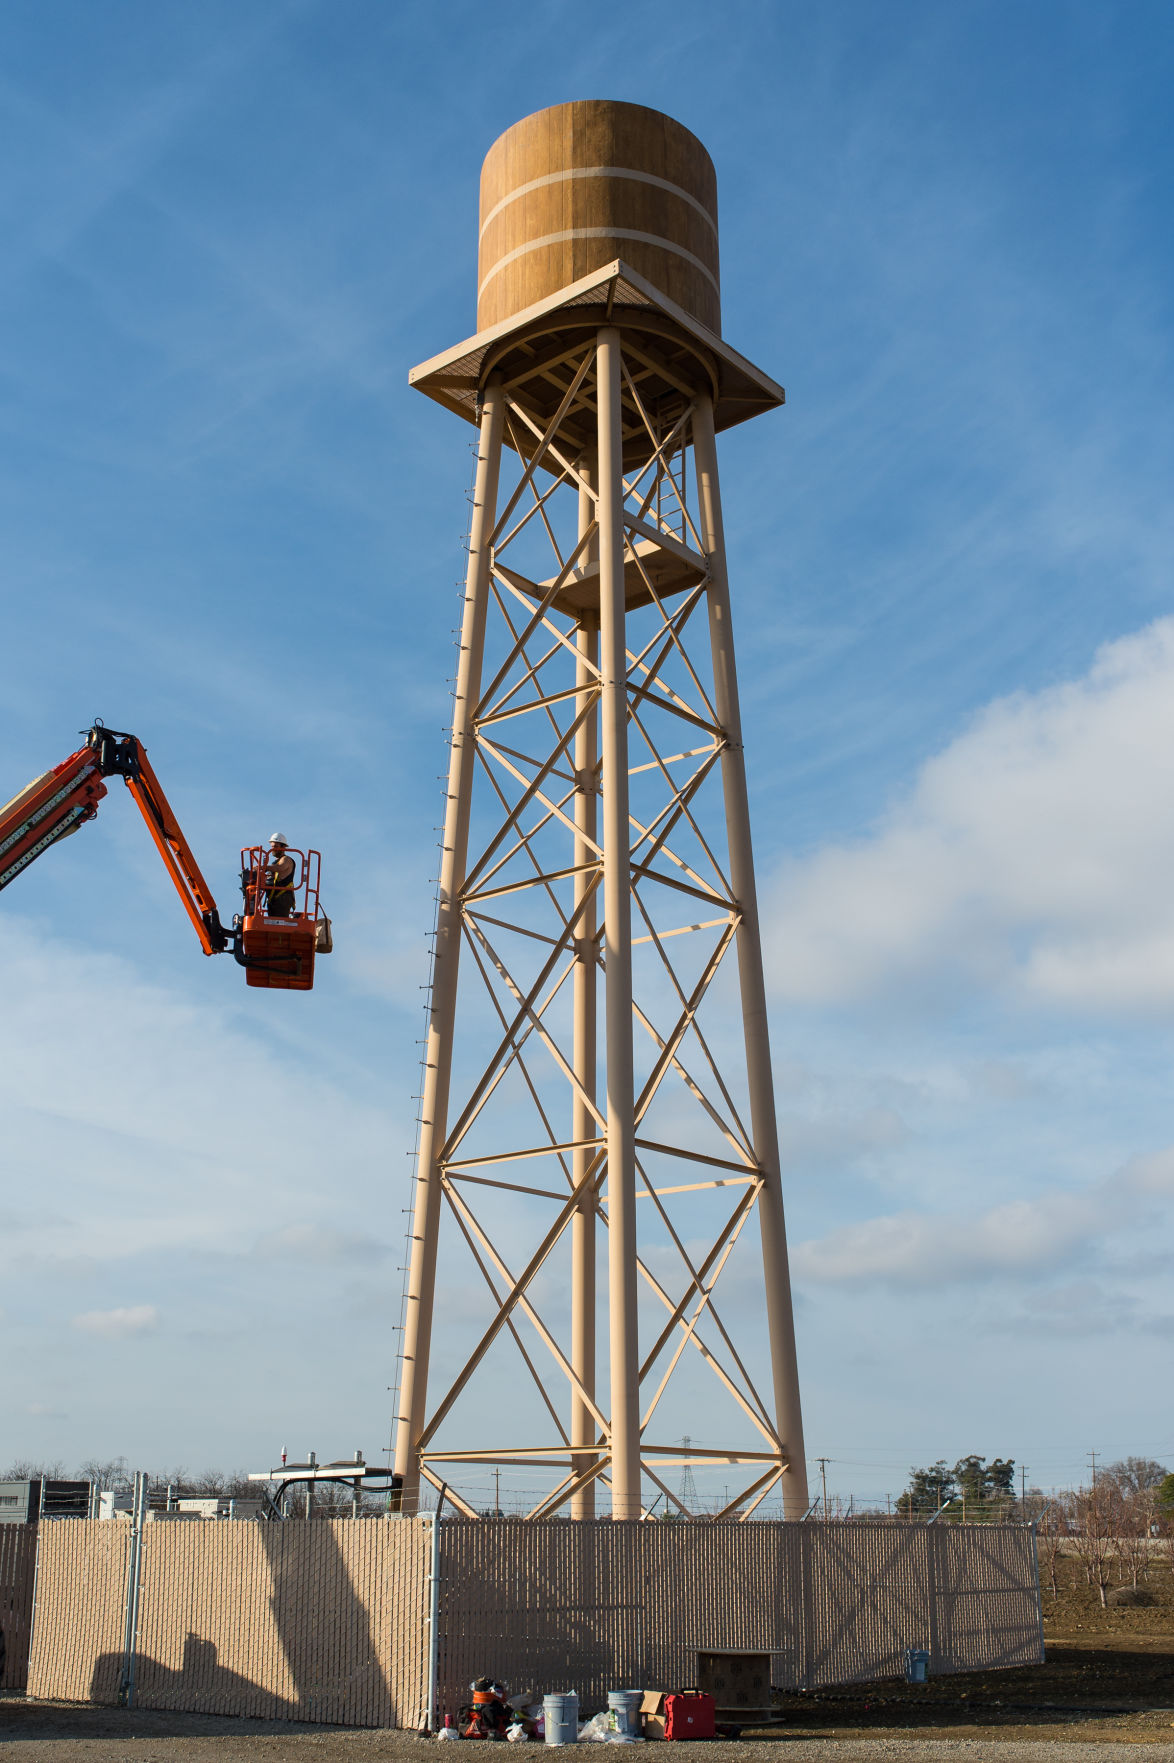 oakley water tower